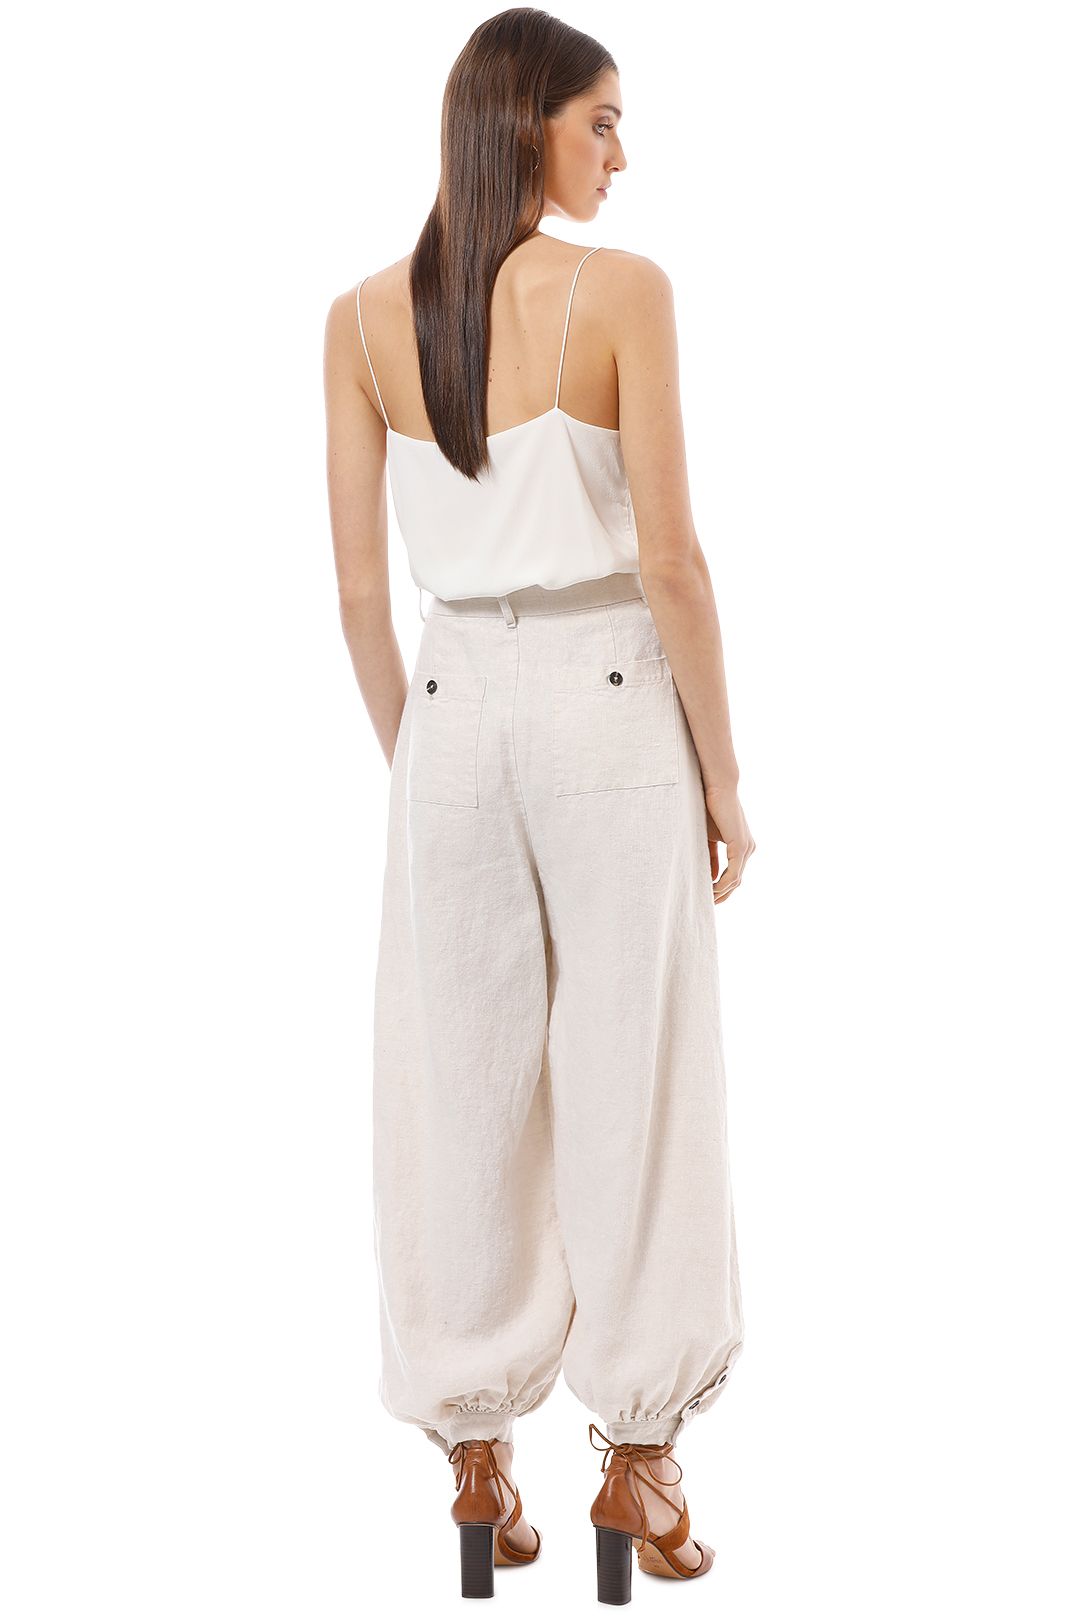 Shona Joy - Linen Tailored Harem Pants with Belt - Natural - Back